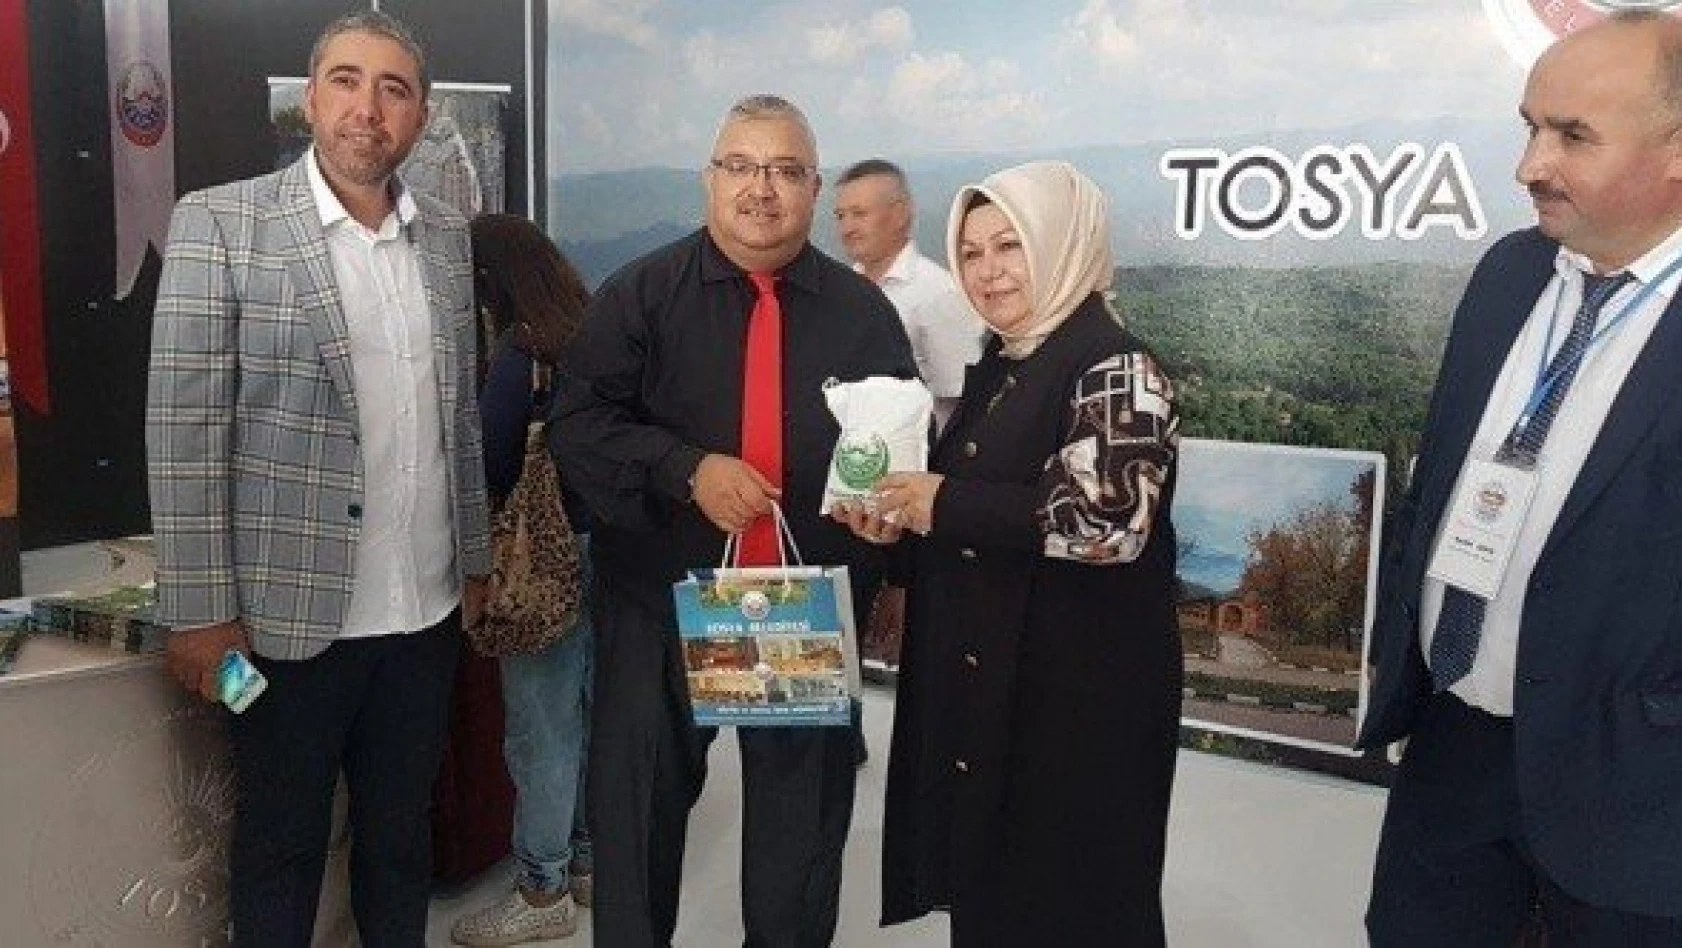 Sancaktepe Belediye Başkanından Tosya standına ziyaret